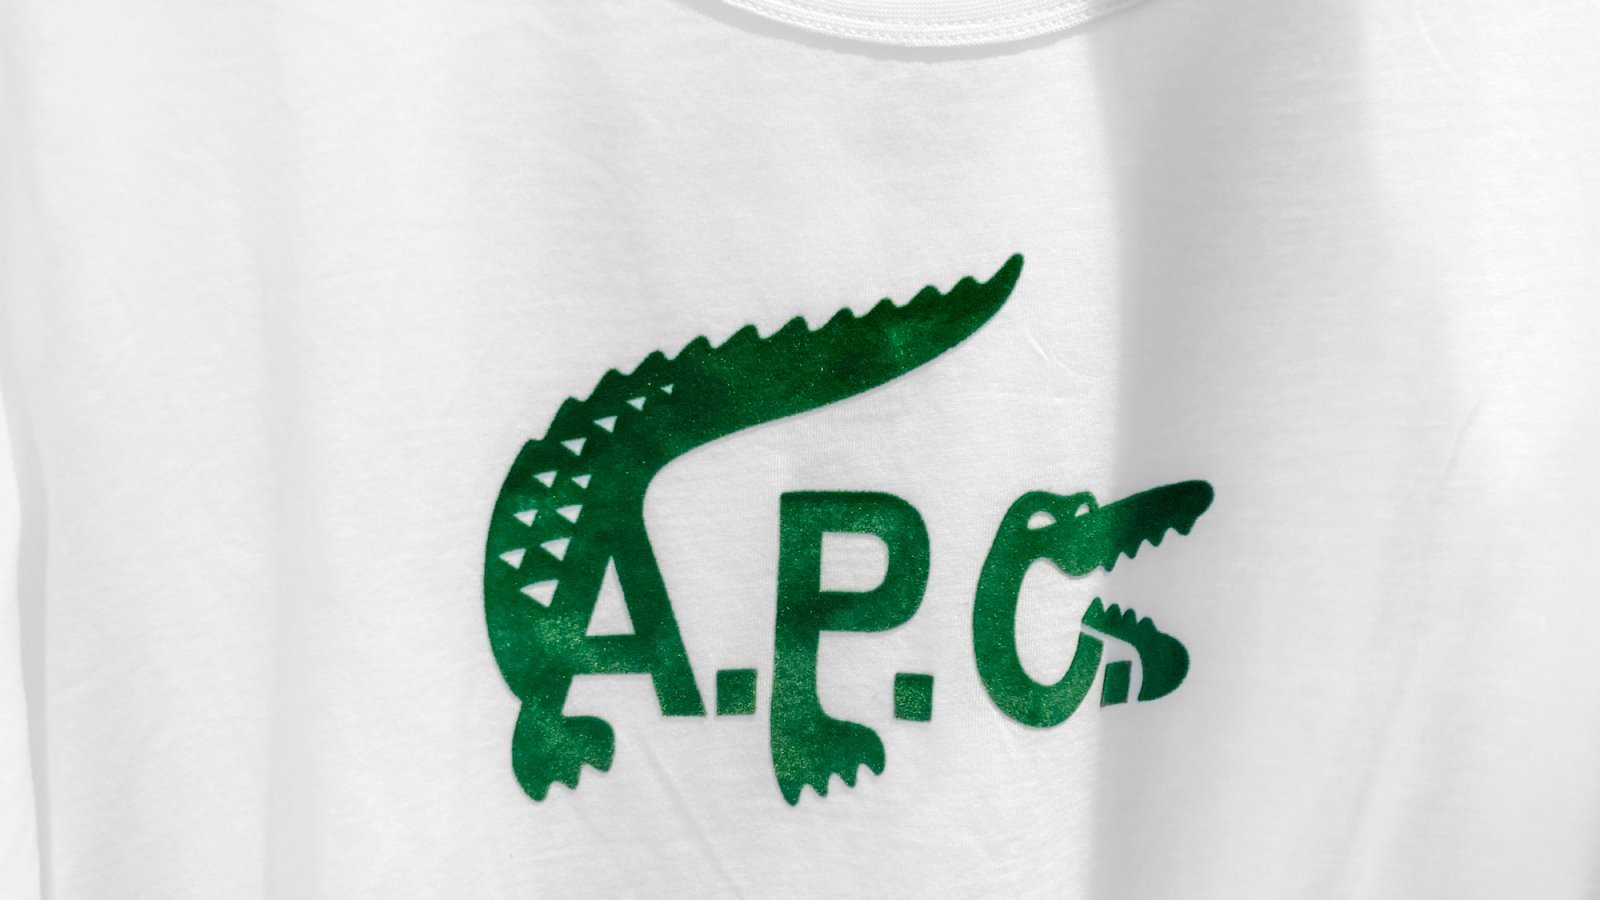 新品！A.P.C.×LACOSTEコラボコレクション　Tシャツ